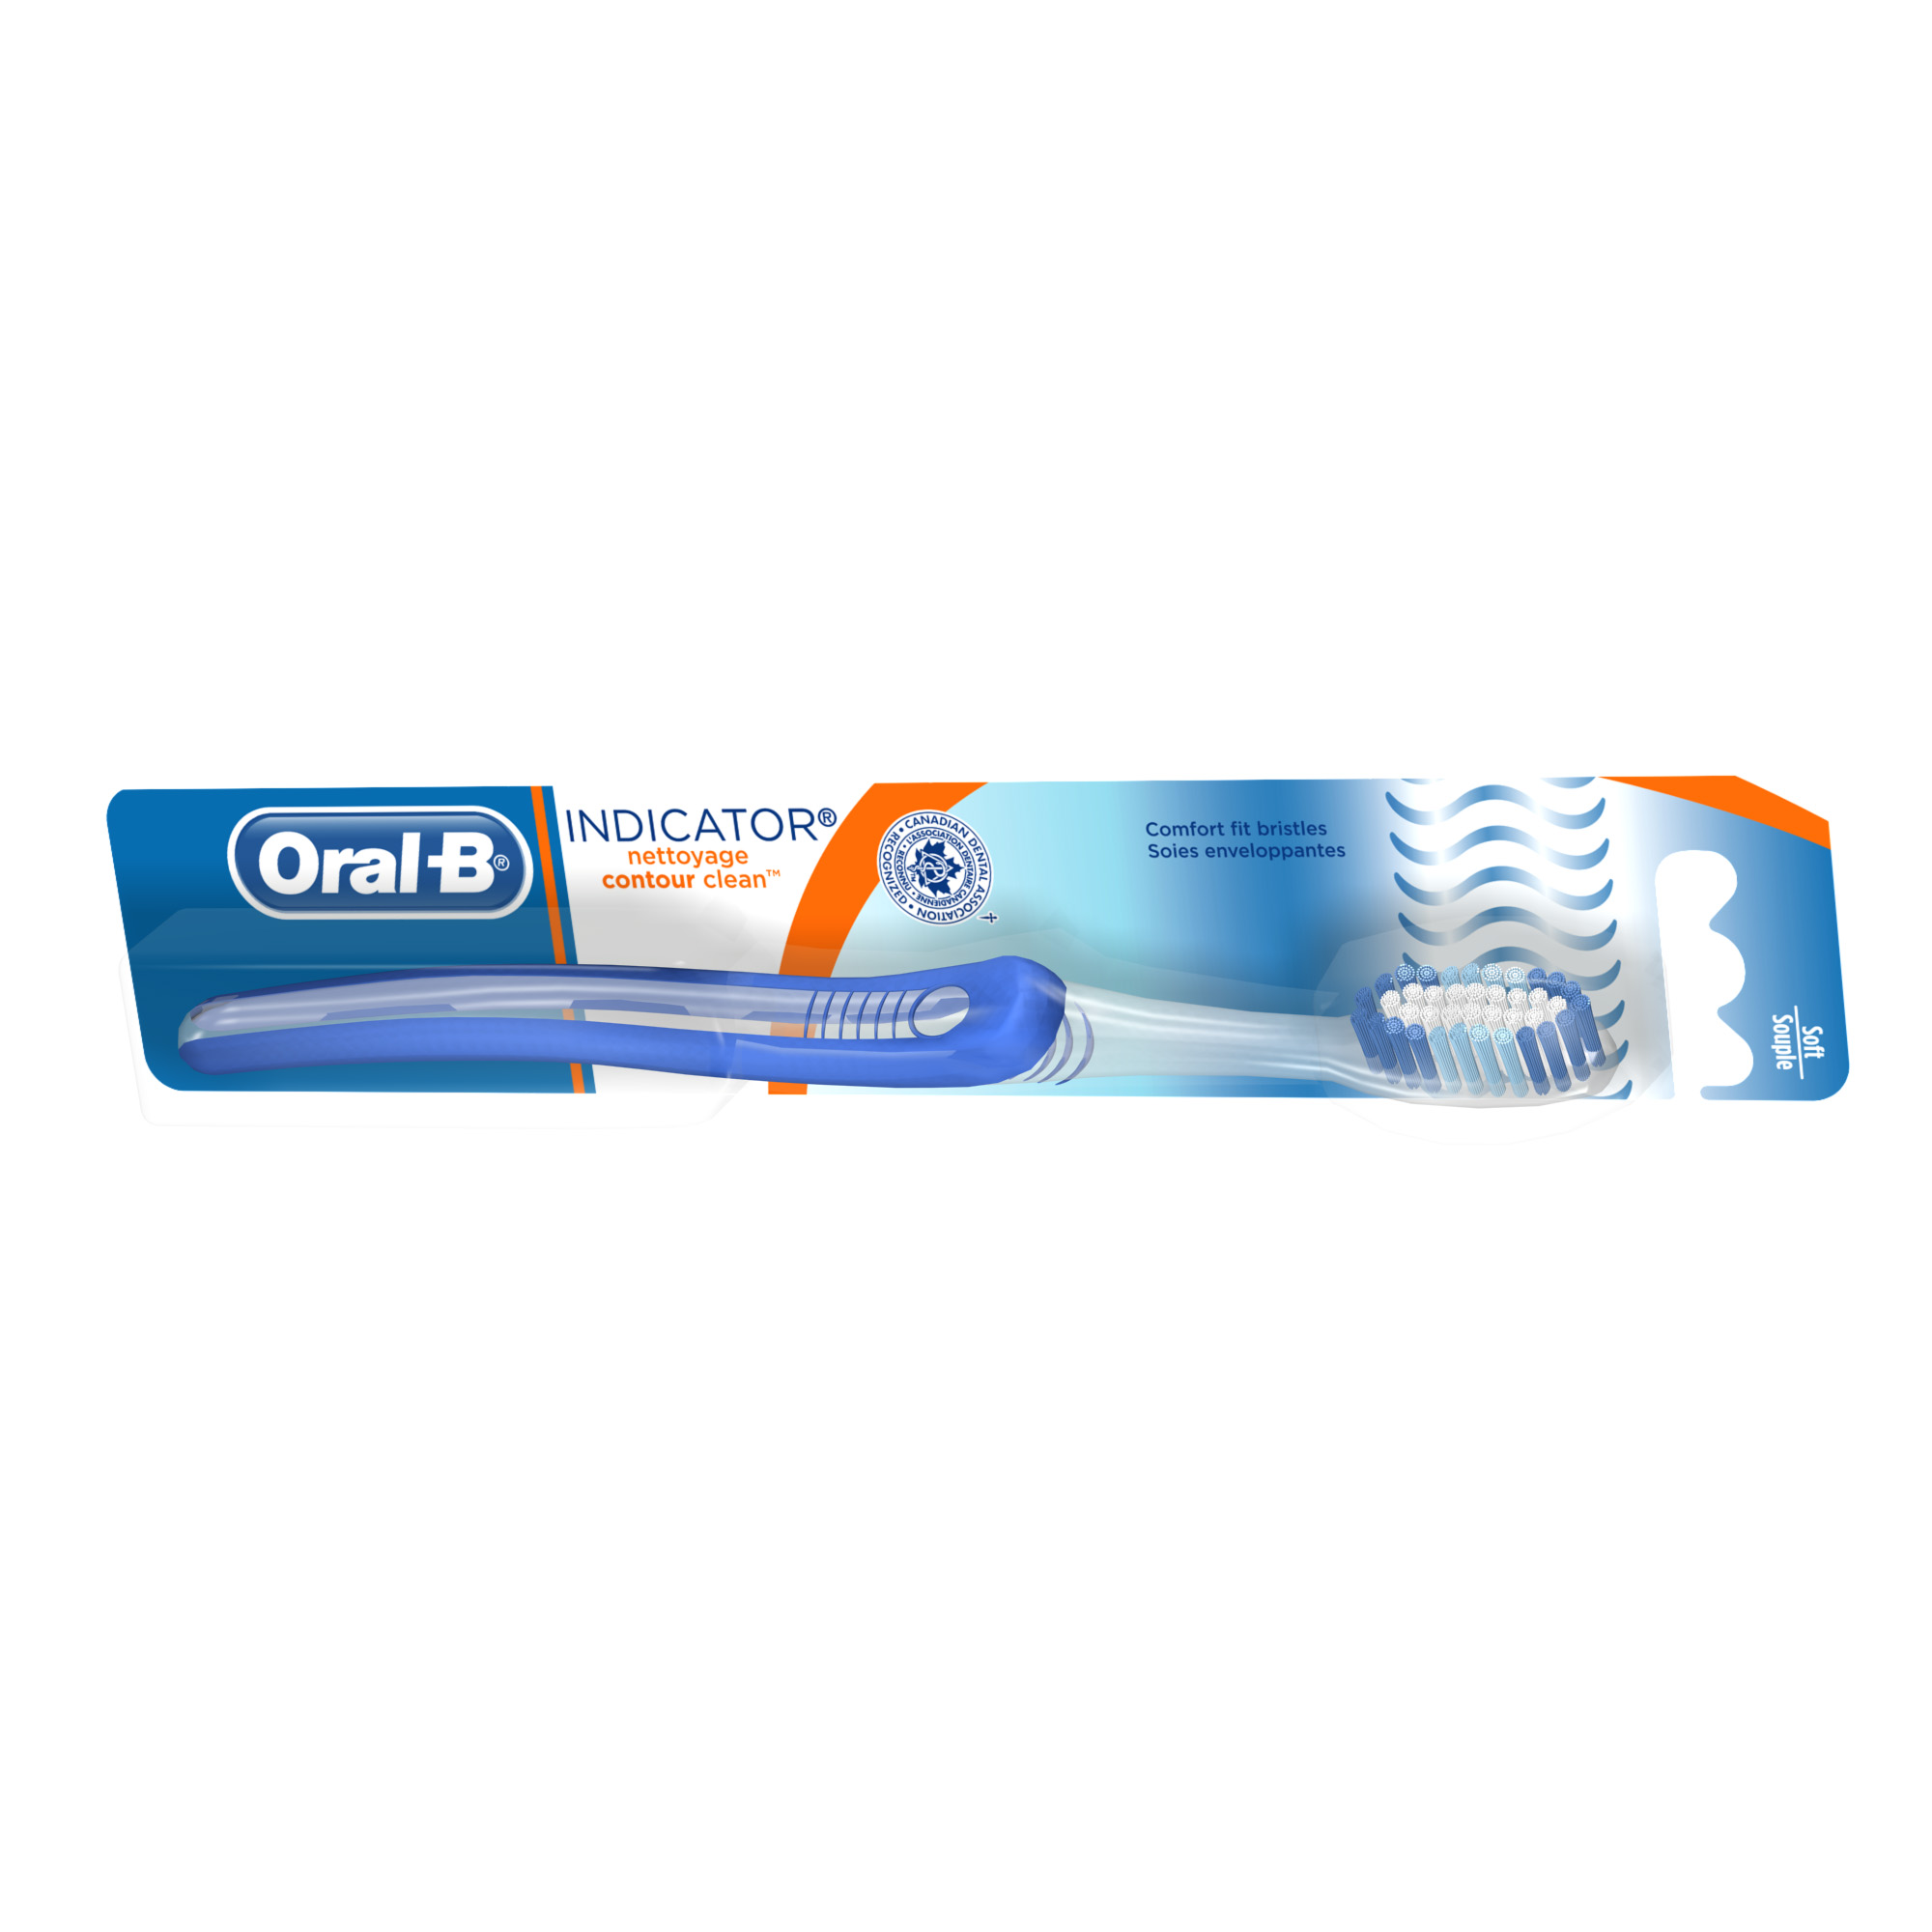 P&amp;G Oral B Toothbrush  Indicator Soft 72/Case